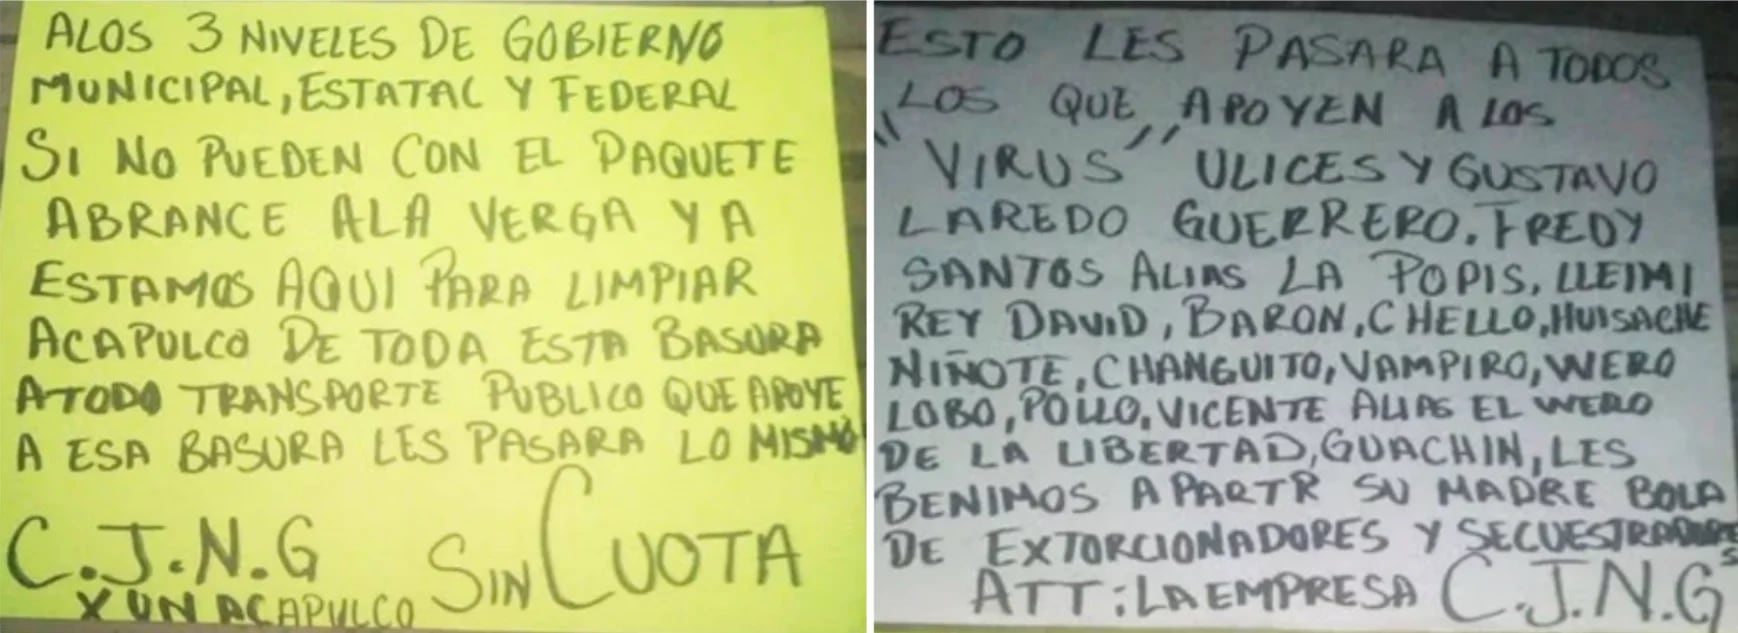 Los mensajes dejados esta semana junto a un rostro humano cercenado son dirigidos a las autoridades locales y federales, así como directamente a “Los Virus”, los supuestos líderes de la mafia que controlaría los secuestros, robos y extorsiones en la exclusiva zona turística de Acapulco, Guerrero Fotos: (Twitter)